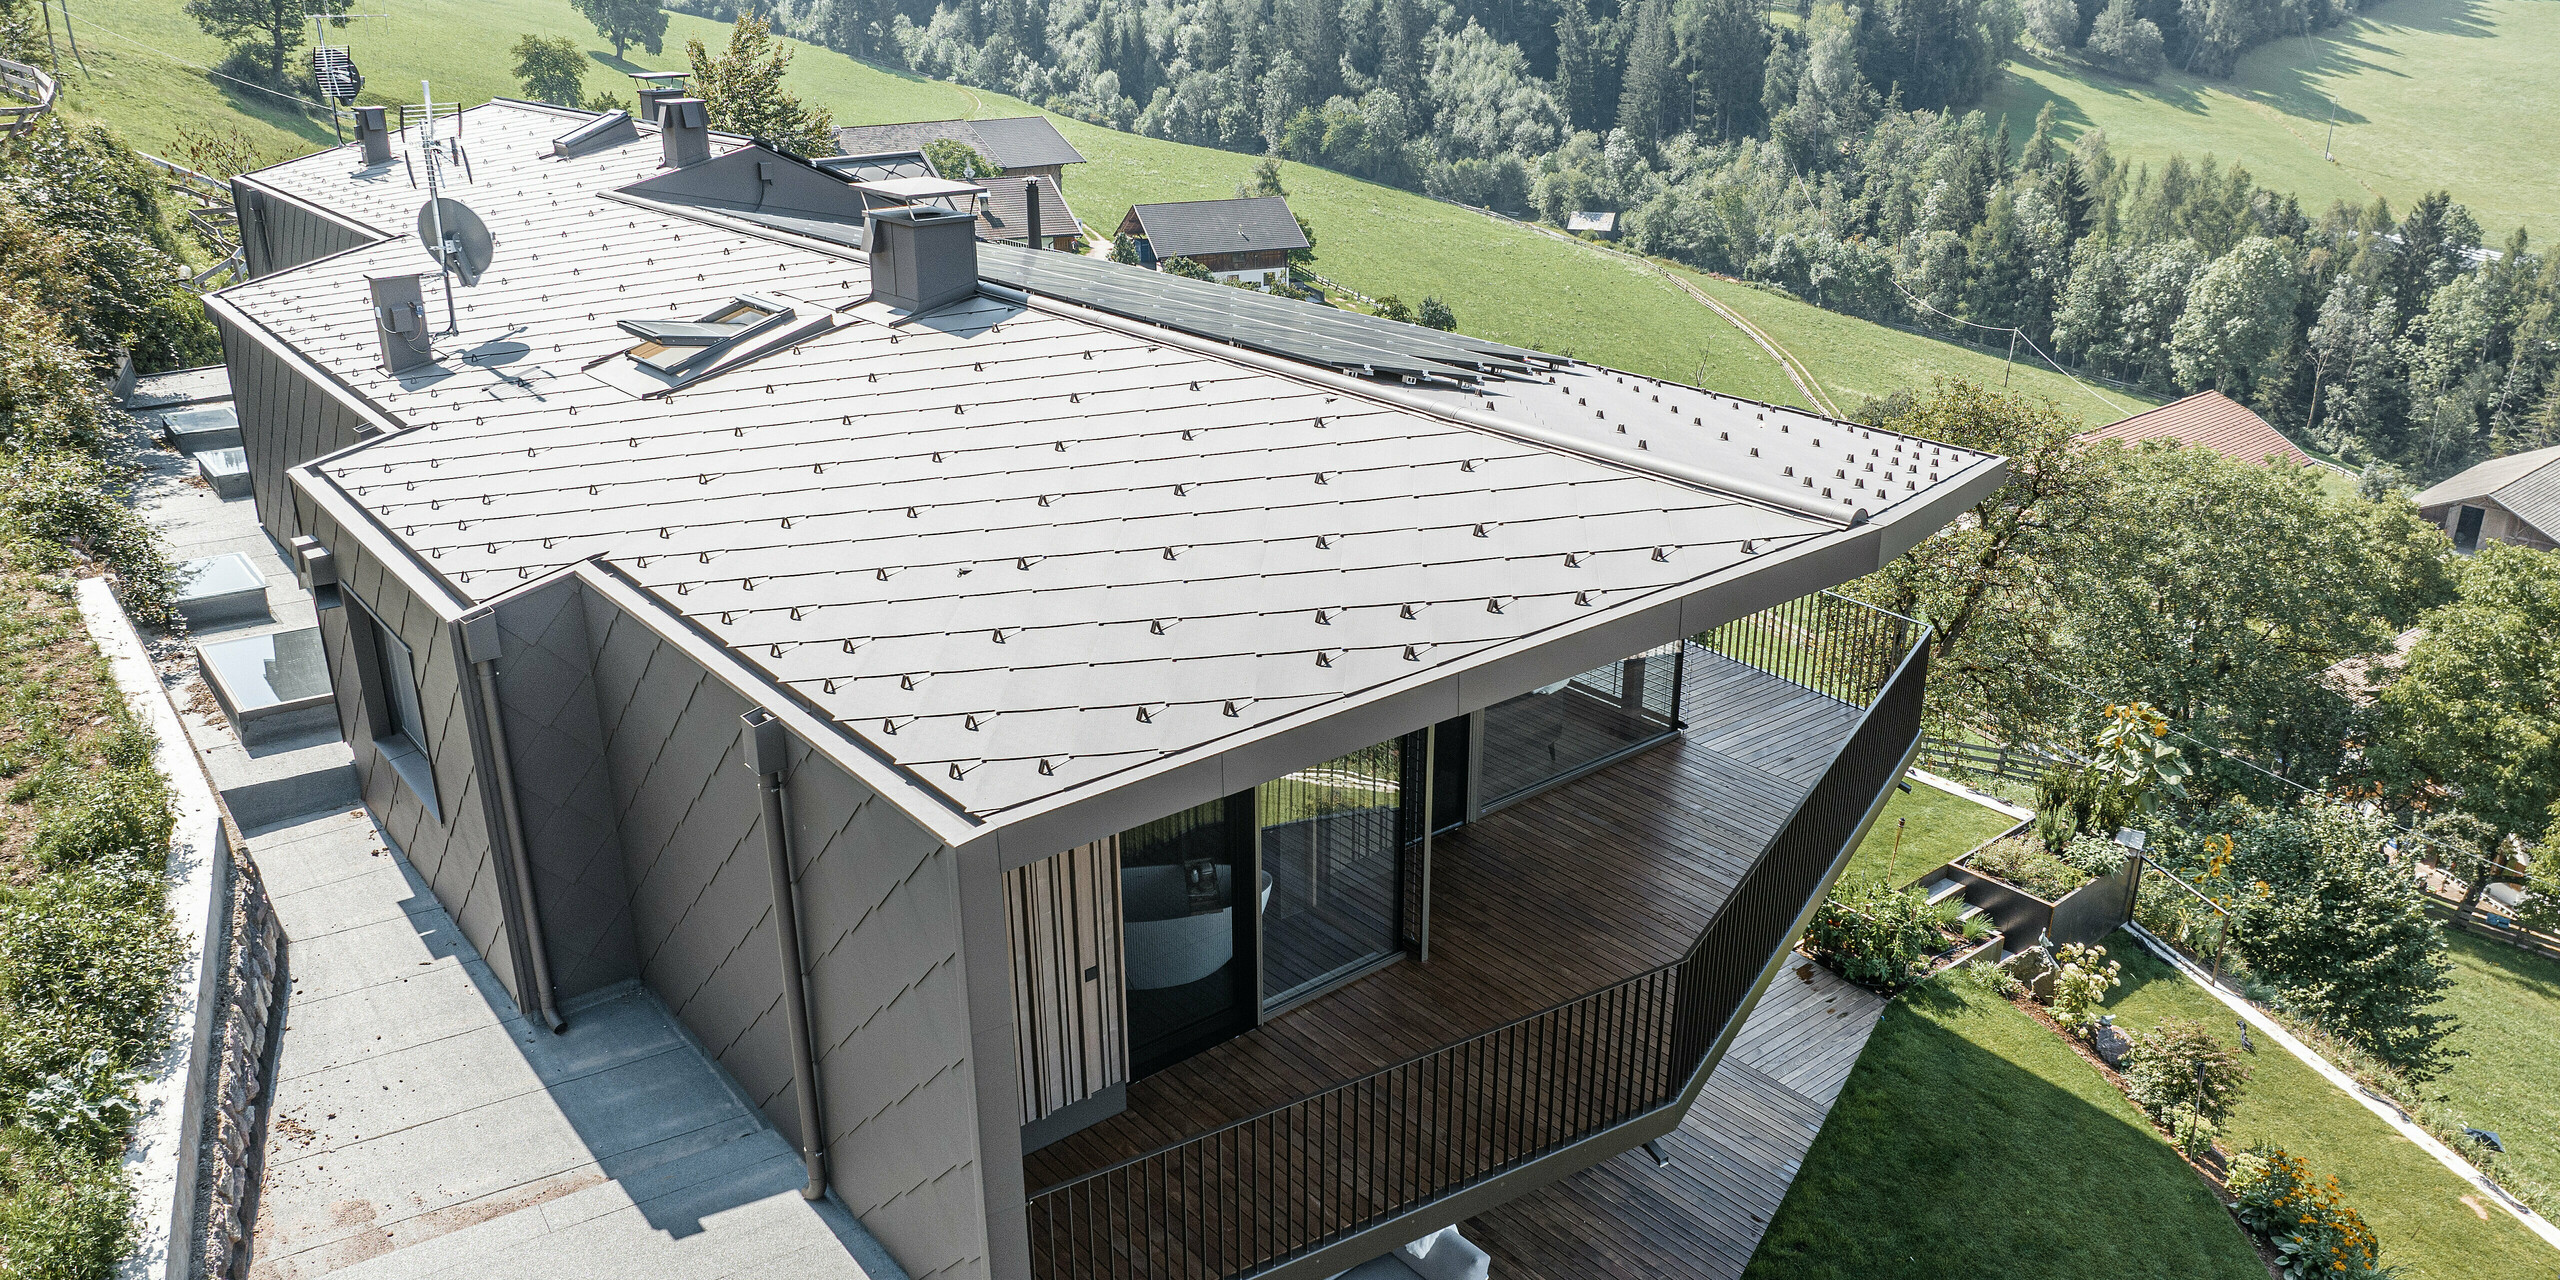 Pohled na zmodernizovaný dvojdům v Möltenu v Jižním Tyrolsku vybavený odolnými falcovanými a falcovanými šablonami 44x44 v barvě P.10 tmavě hnědé. Design střechy a fasády kombinuje robustní hliník s dřevěnými prvky, obklopený malebnou krajinou s rozsáhlými výhledy na zalesněné kopce. Redesign plynule integruje zrekonstruovanou stávající budovu a nově vybudovaný areál do harmonického celku se zaměřením na dřevo jako stavební materiál.